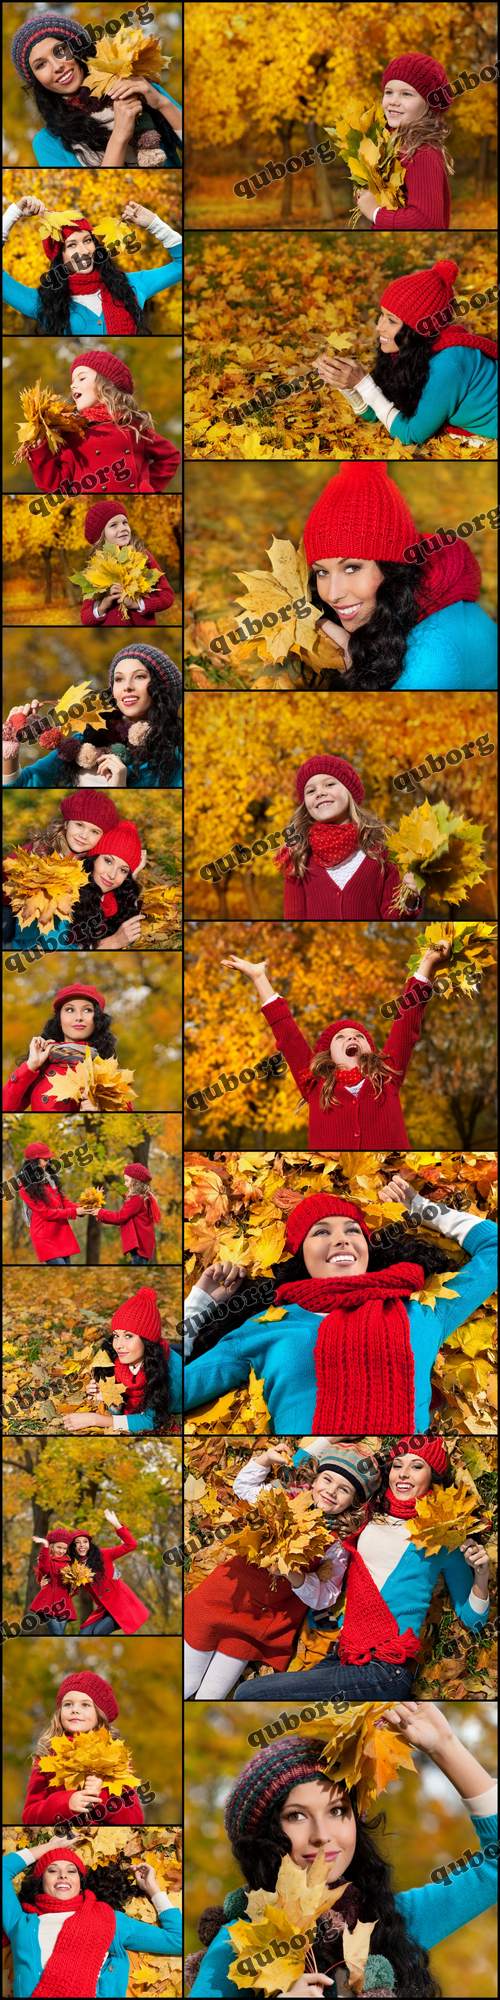 Stock Photos - Autumn People